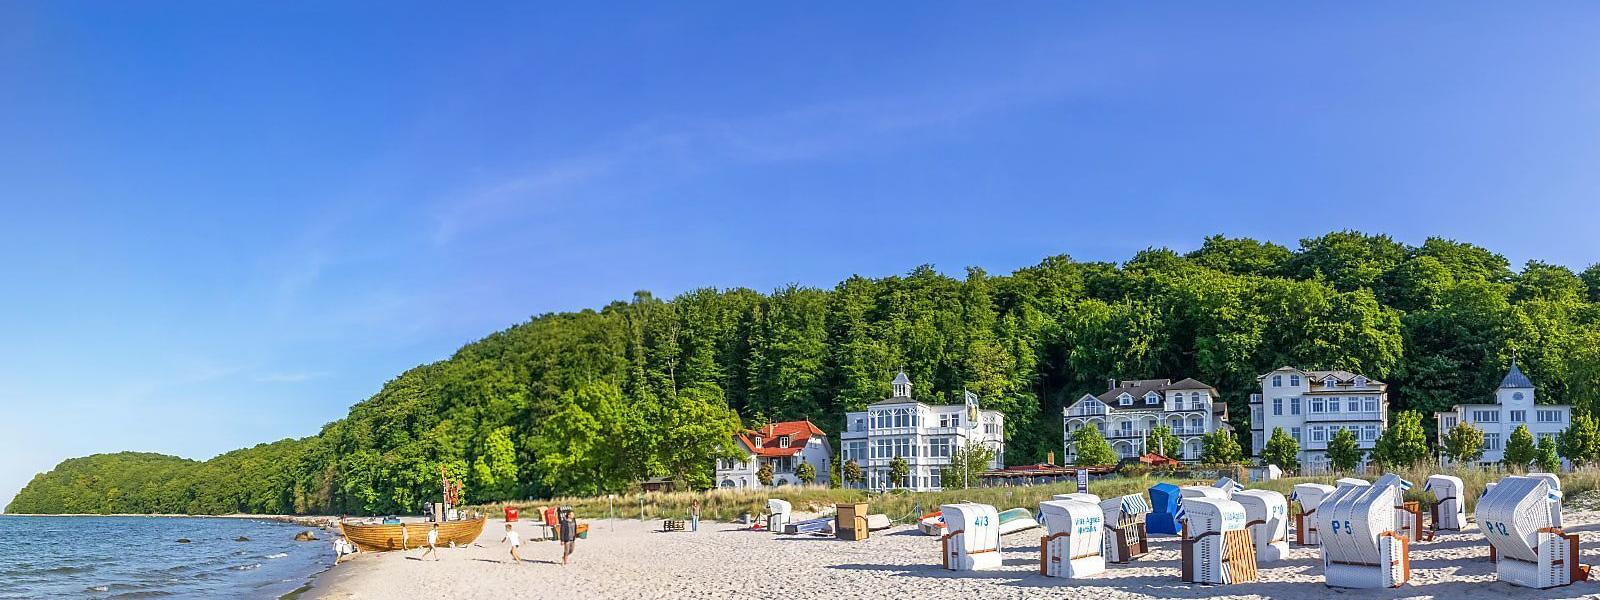 Ferienwohnungen und Ferienhäuser in Mecklenburg-Vorpommern - e-domizil